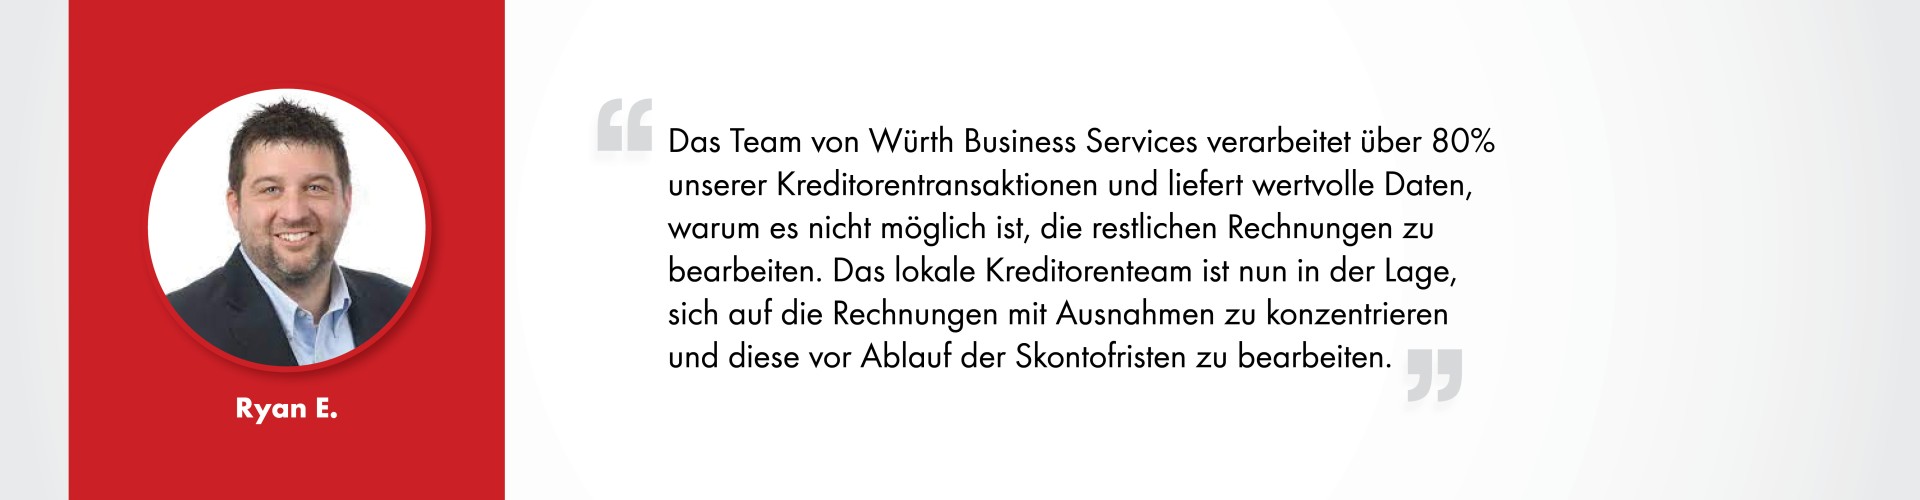 Ryan E._Würth Business Services_Kundenstimmen